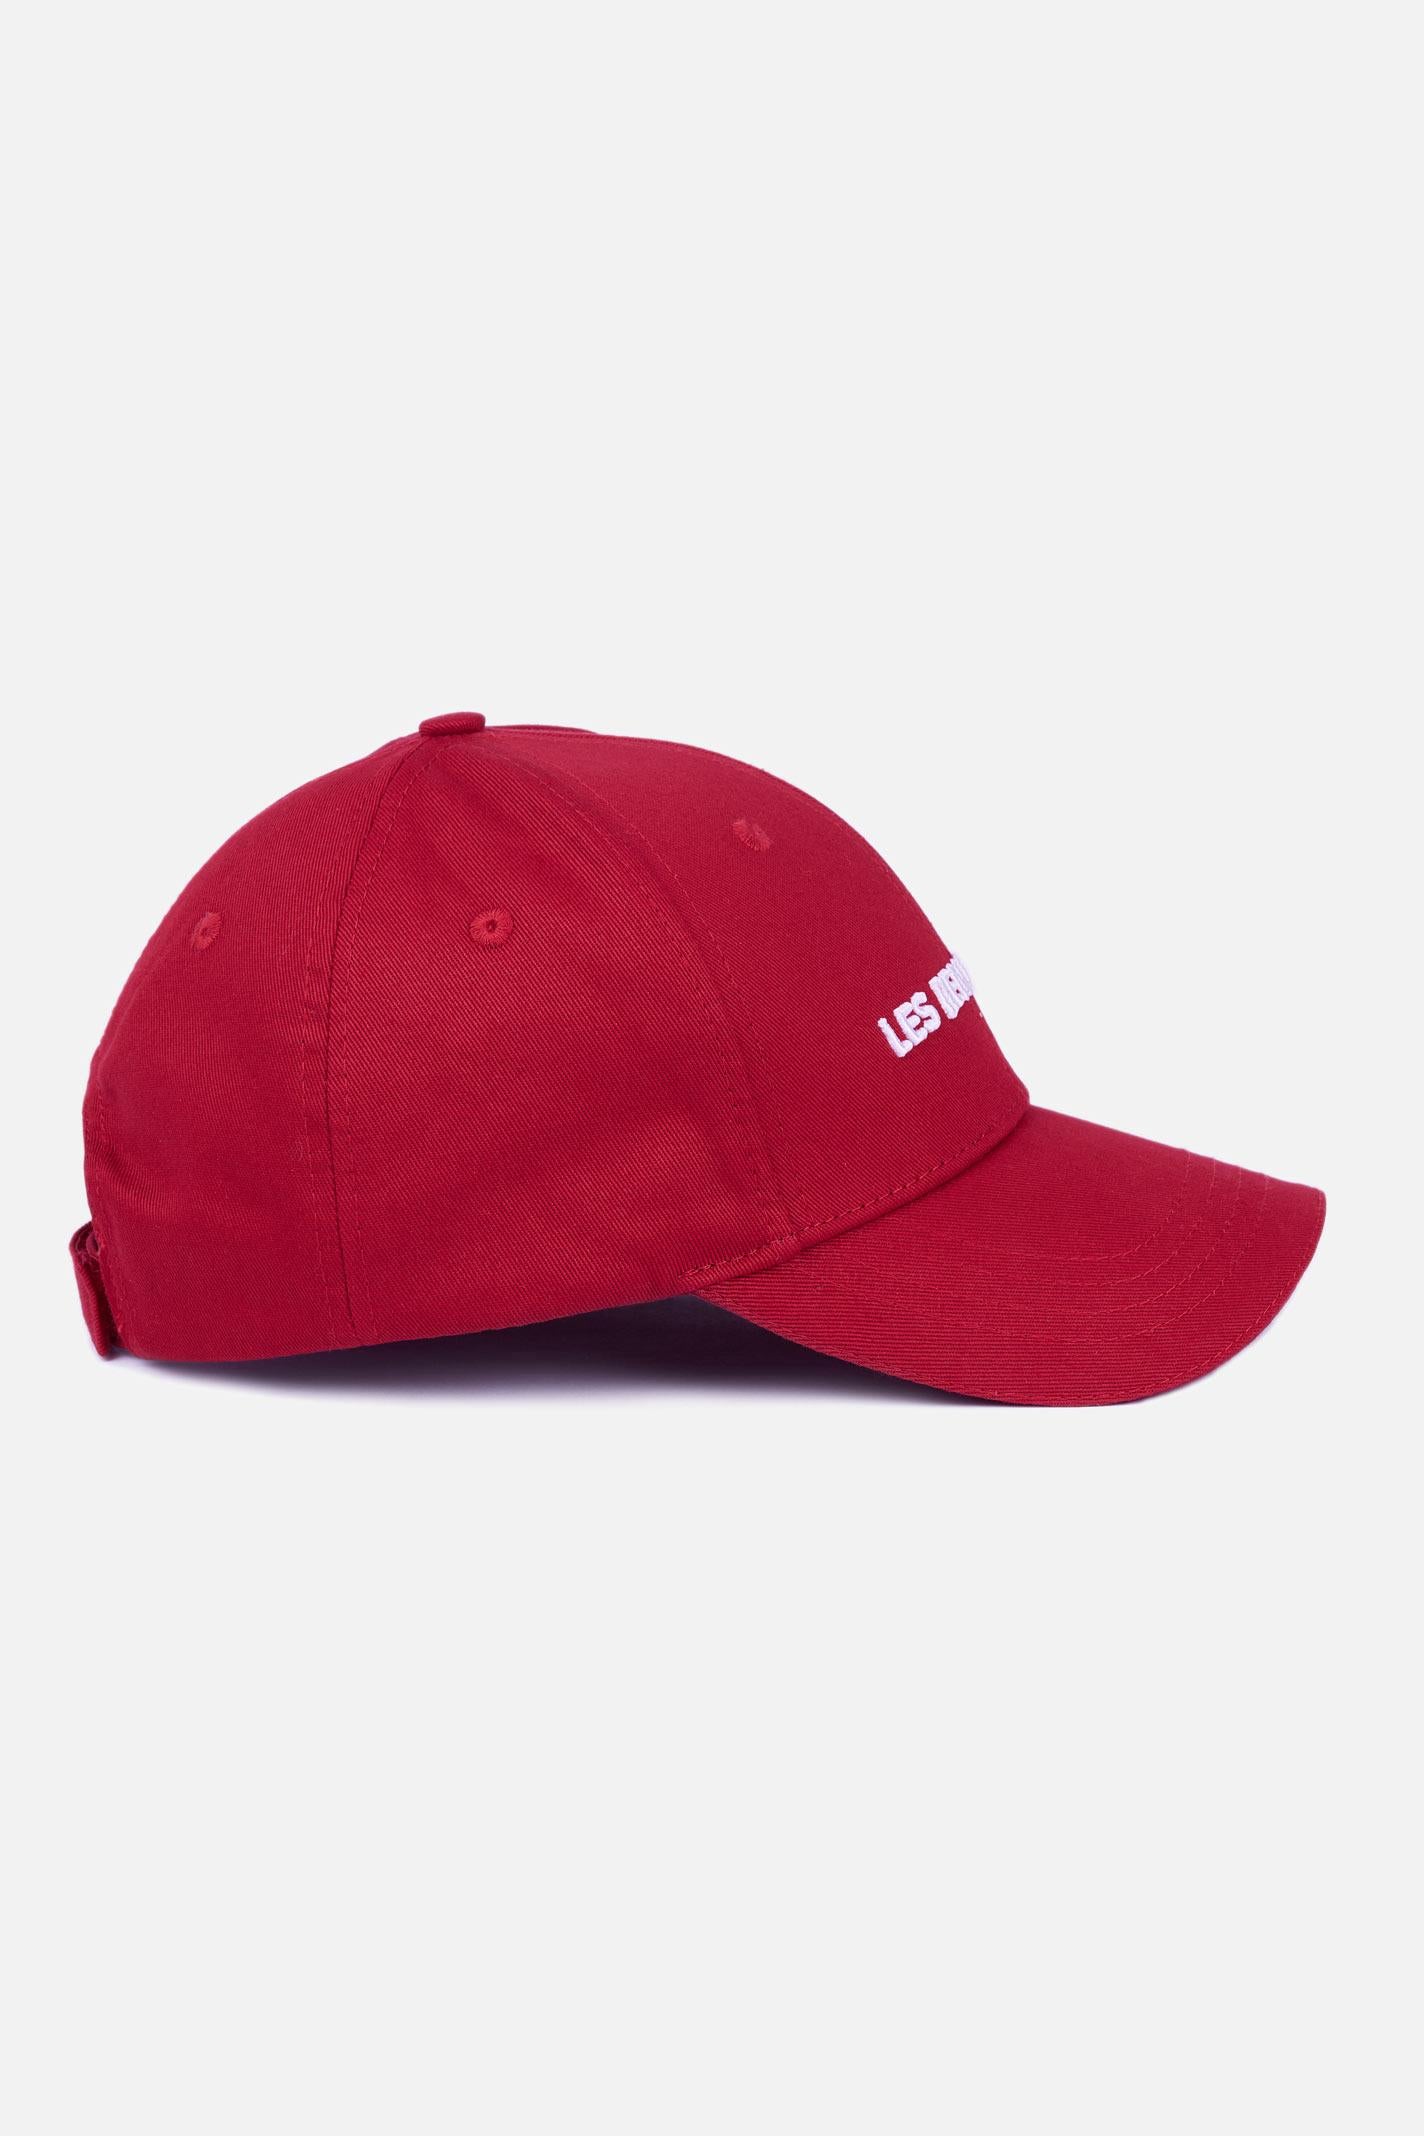 CAP 302